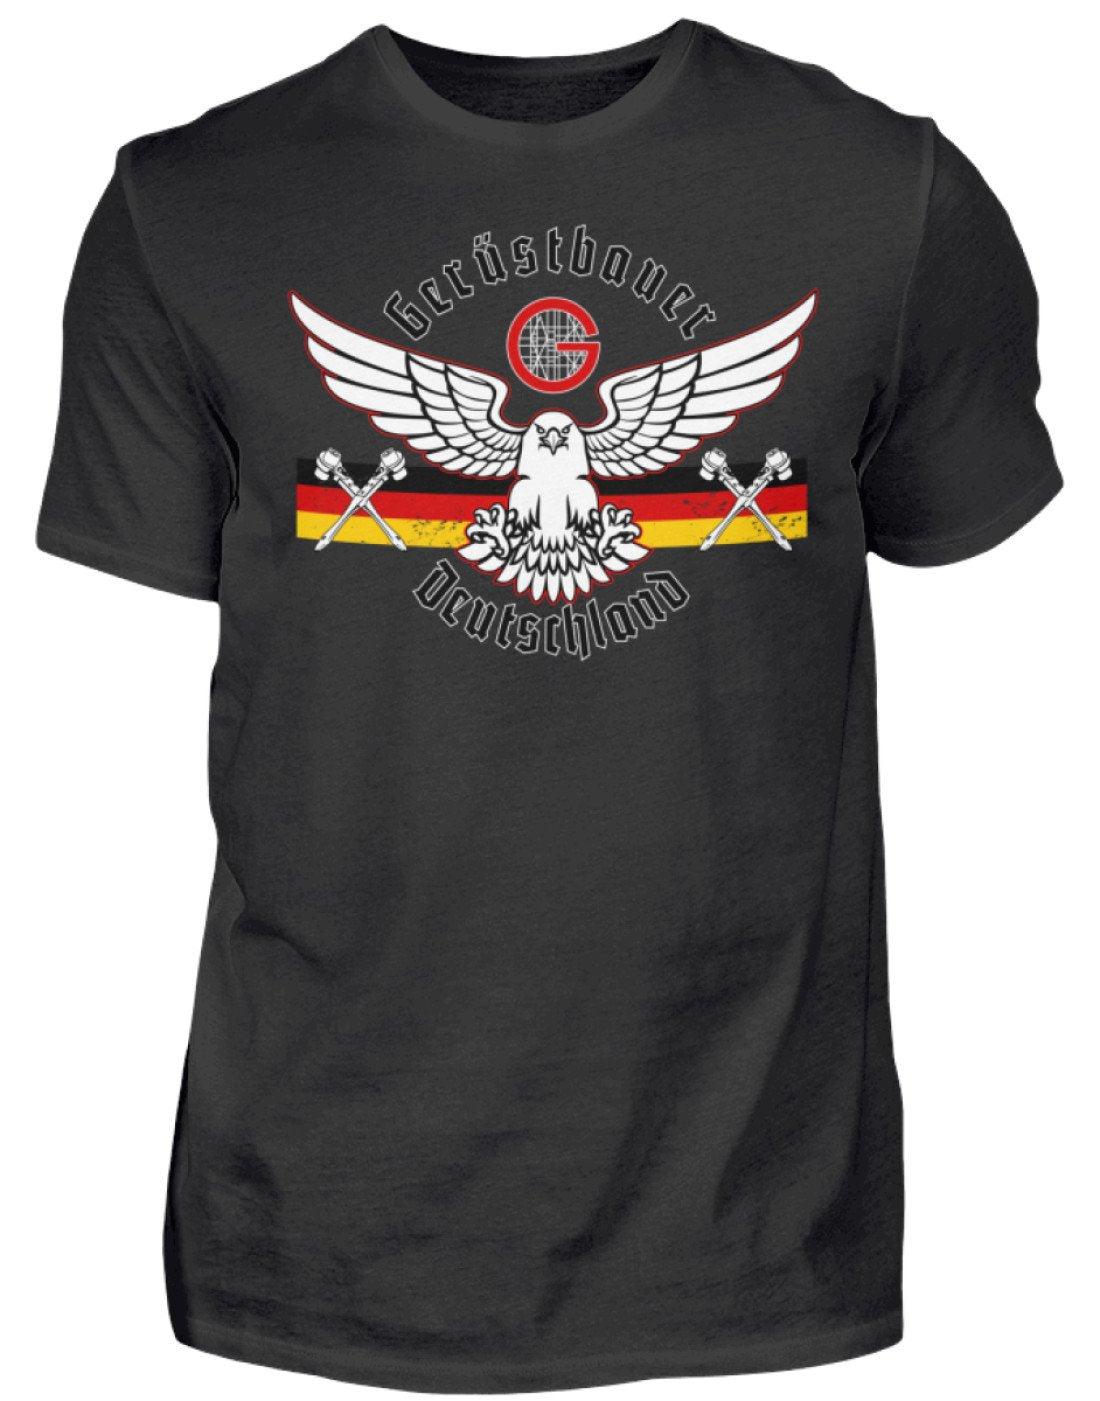 Gerüstbauer Shirt Deutschland €22.95 Gerüstbauer - Shop >>